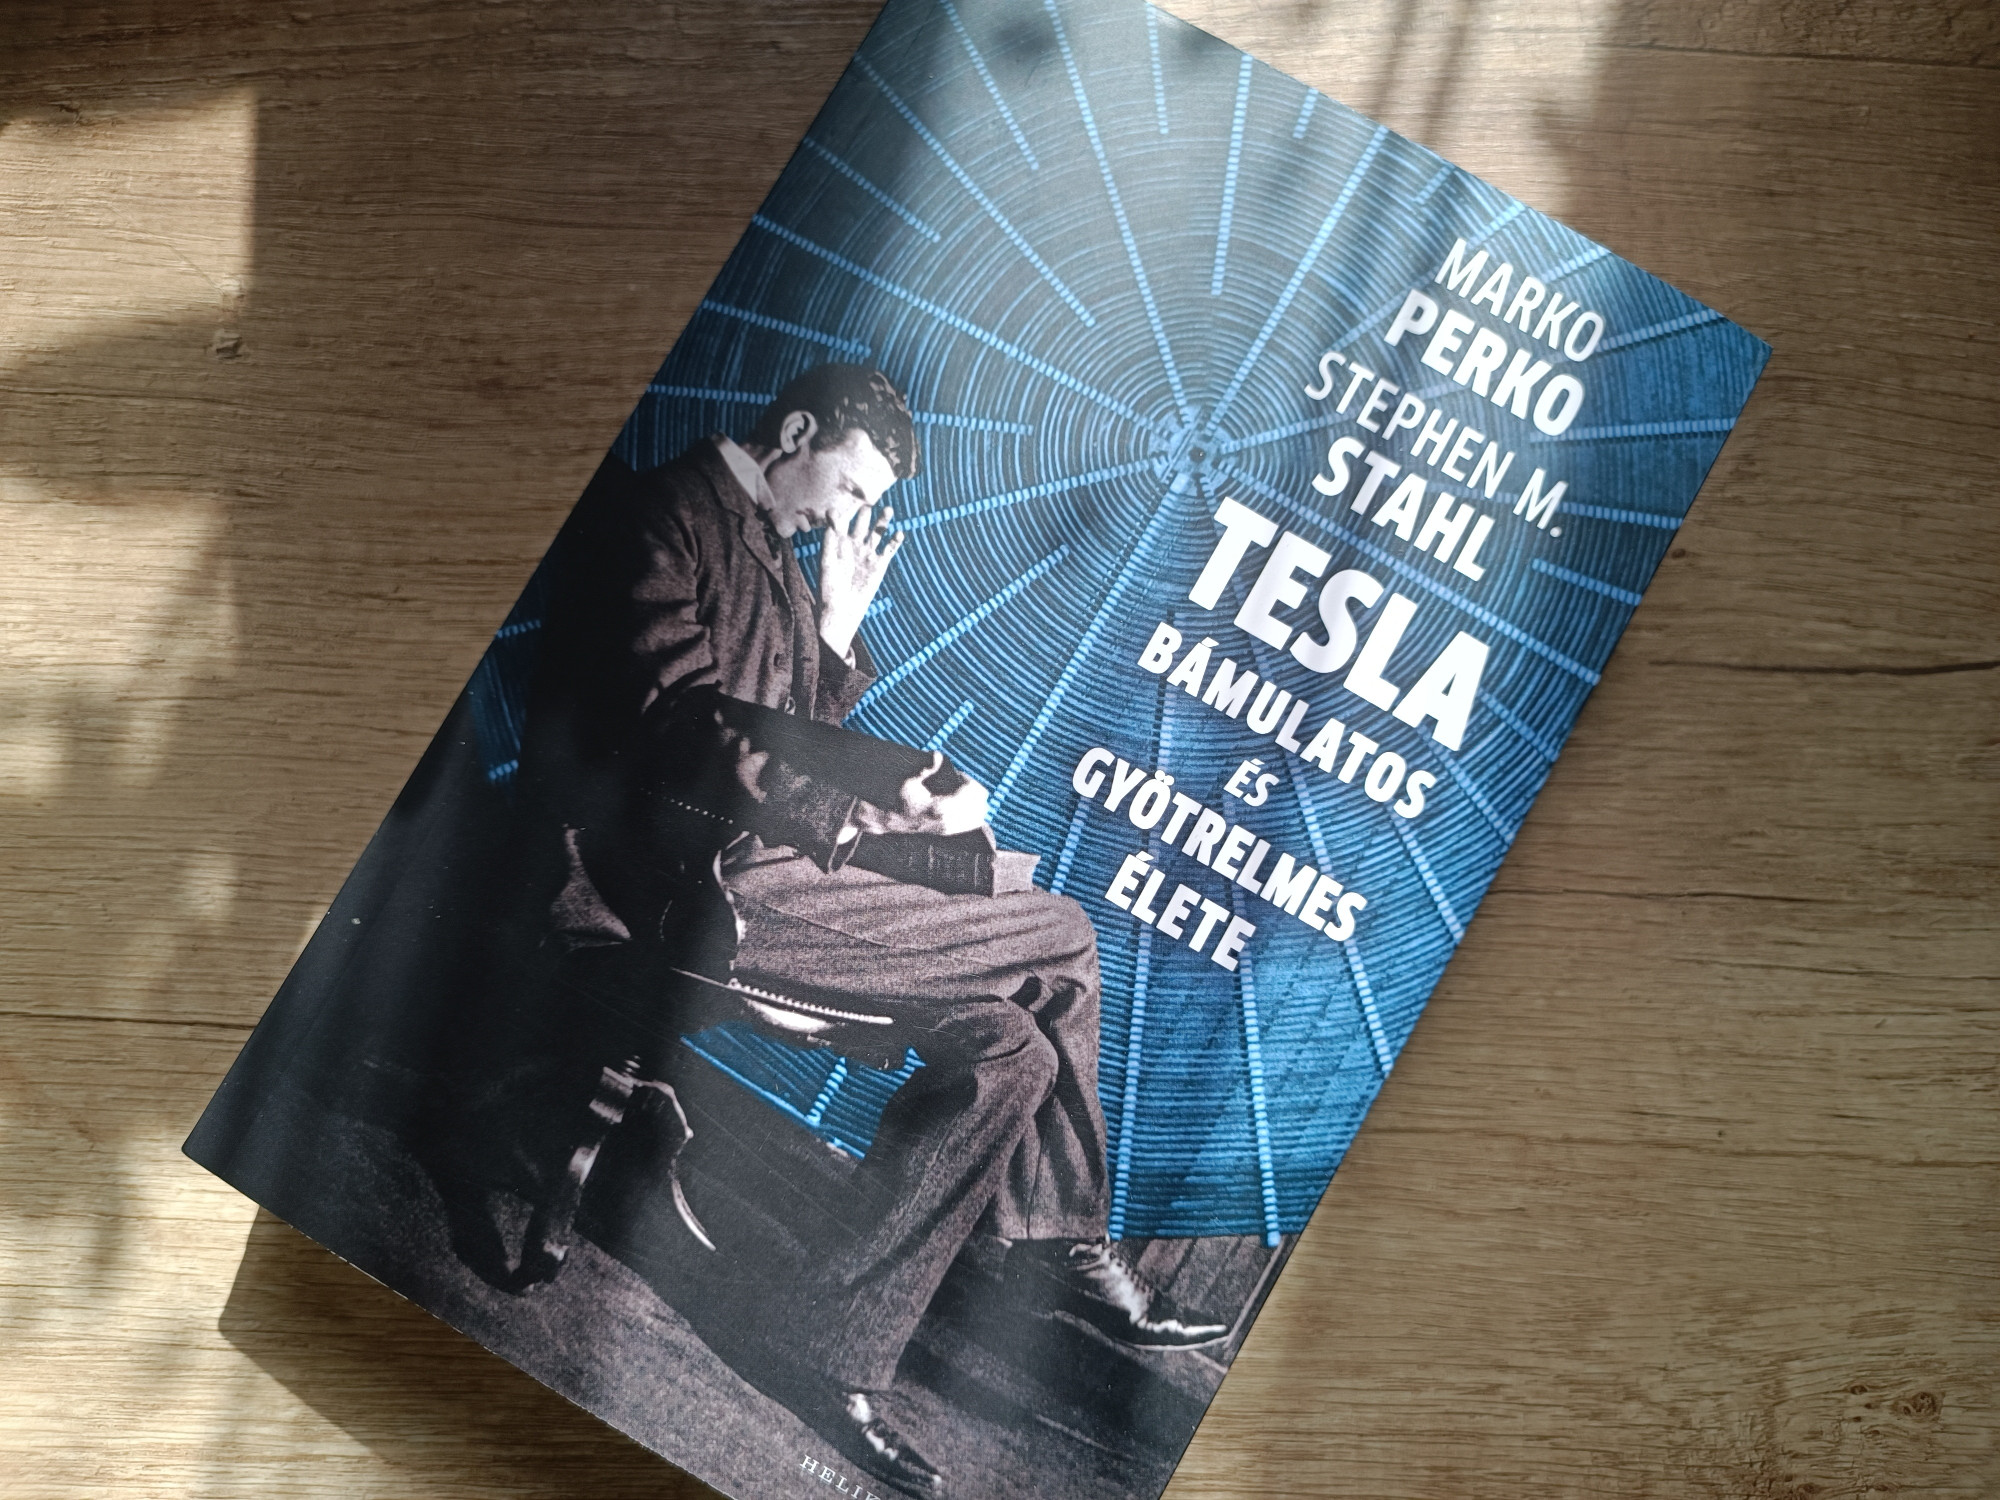 Nikola Tesla egész életében saját elméjének árnyaival hadakozott